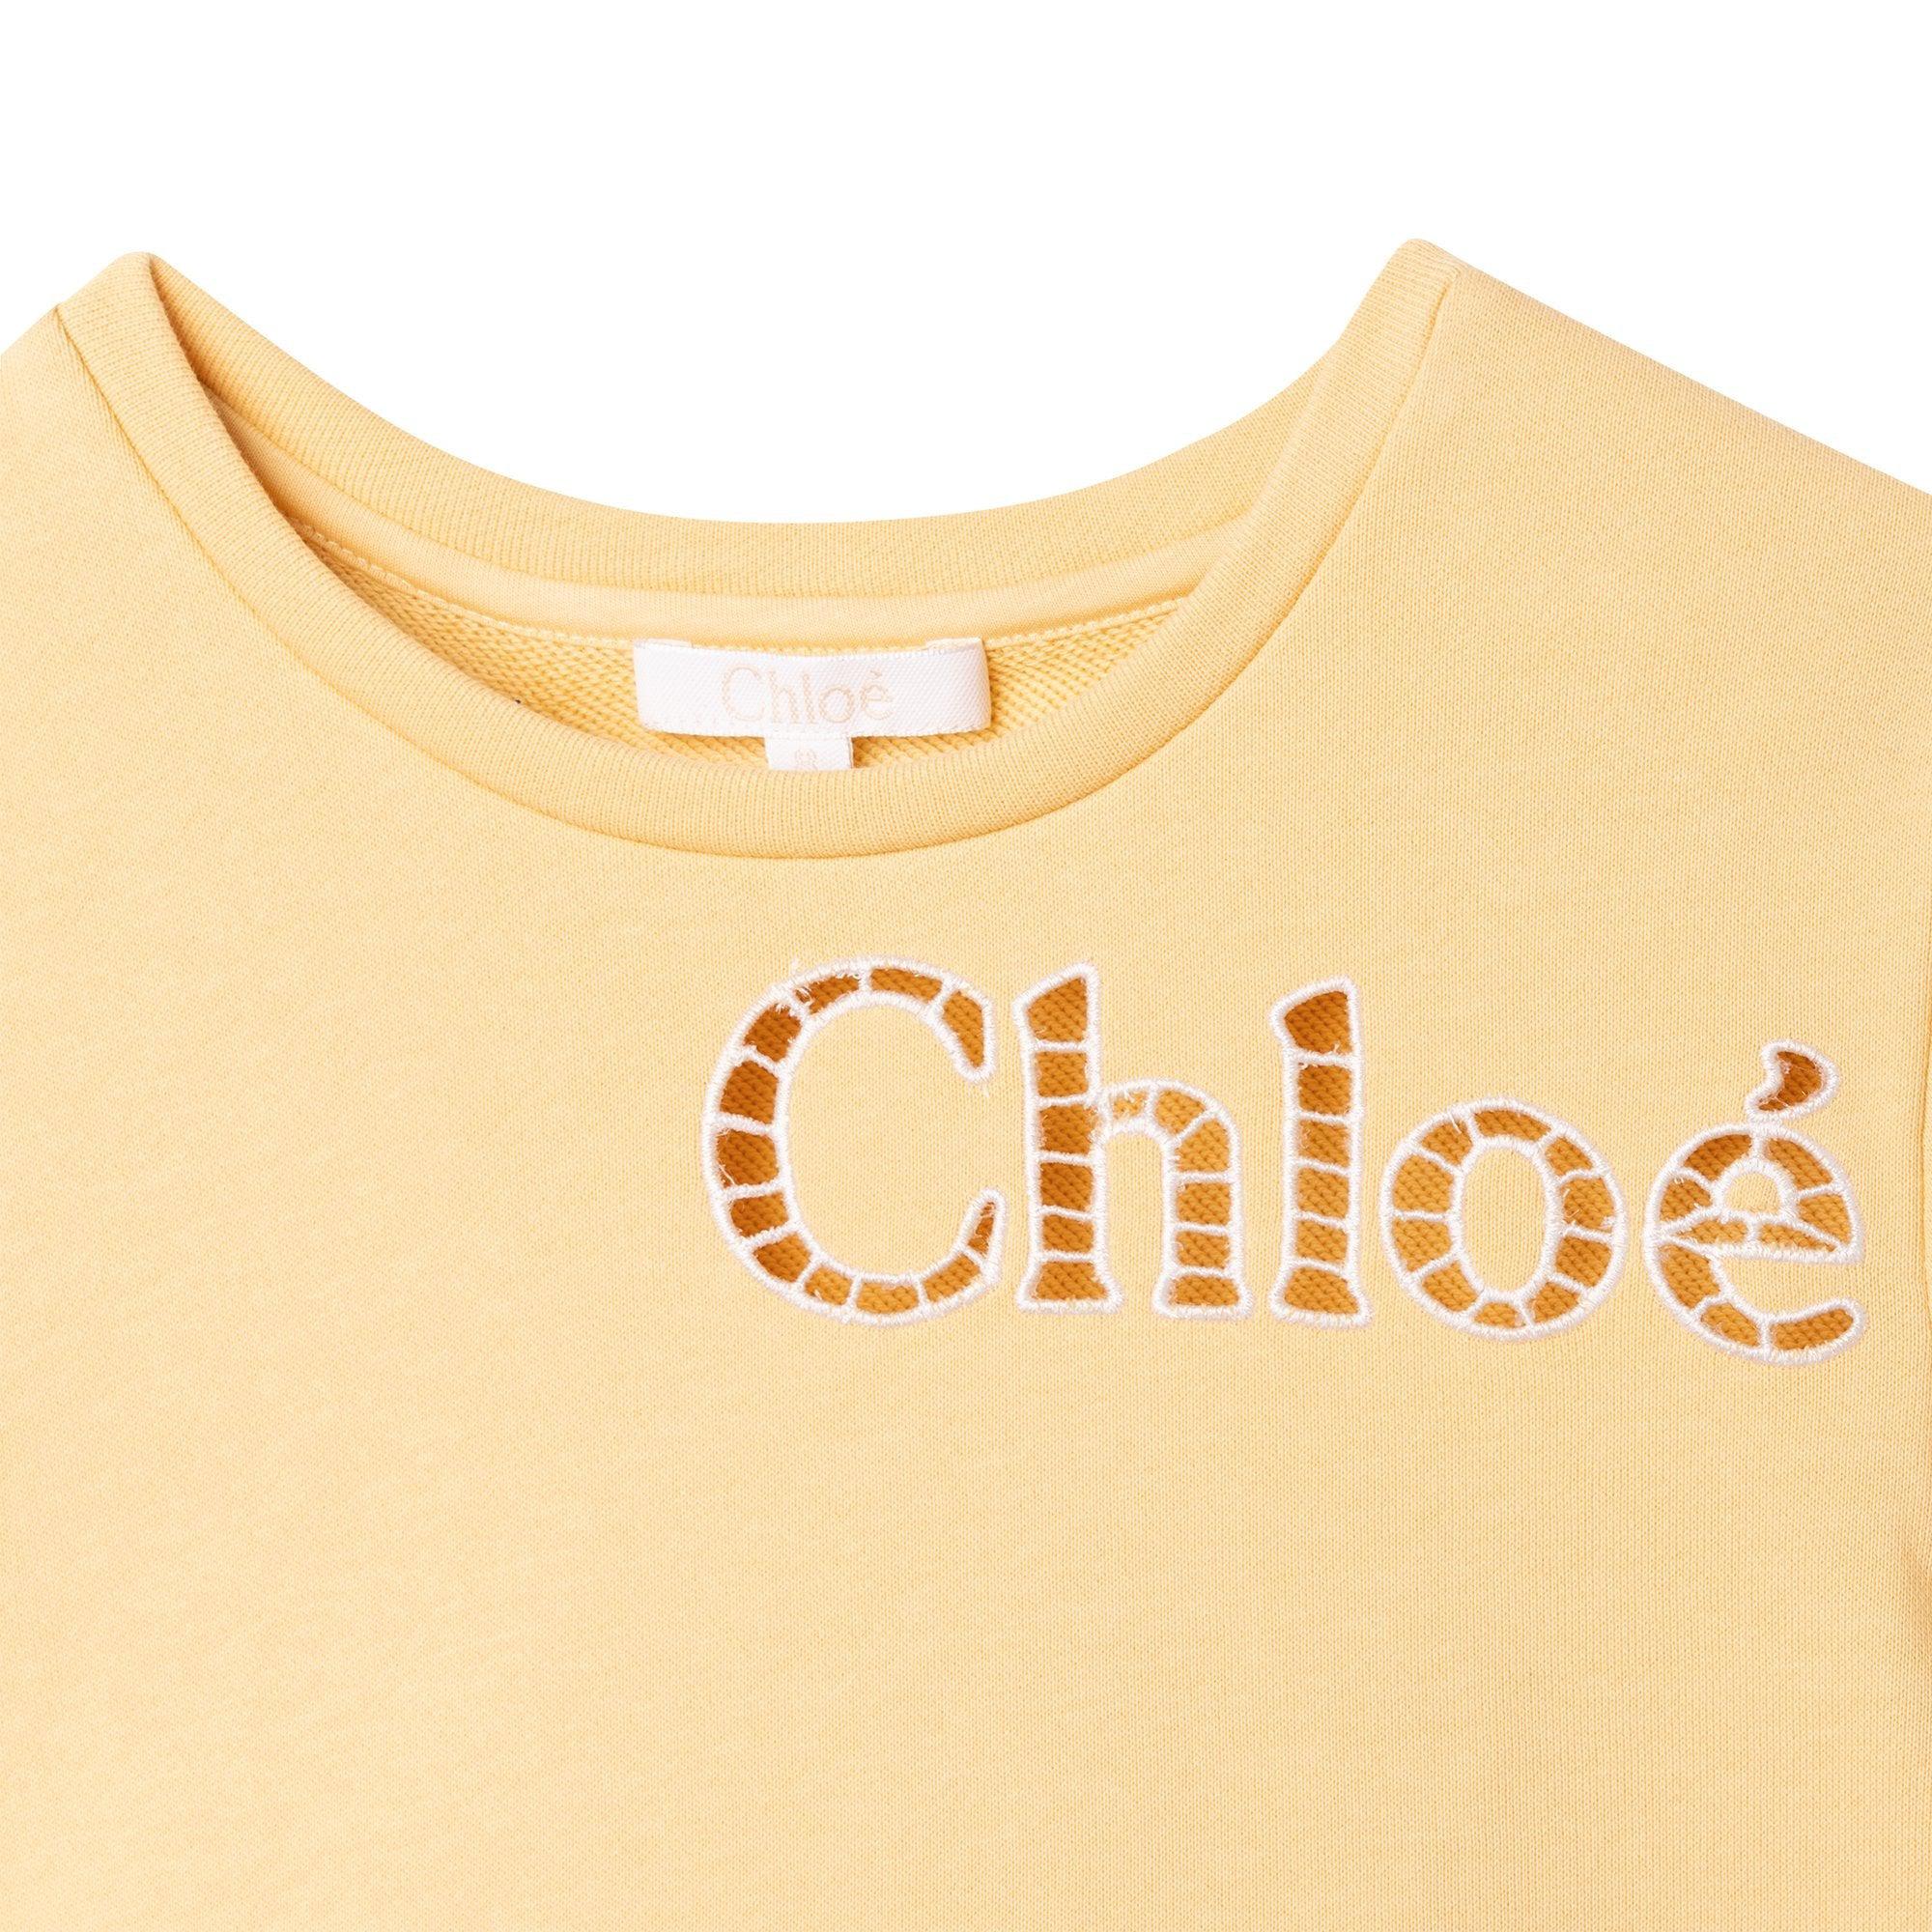 Chloe Girls Yellow Short Sleeved Sweatshirt